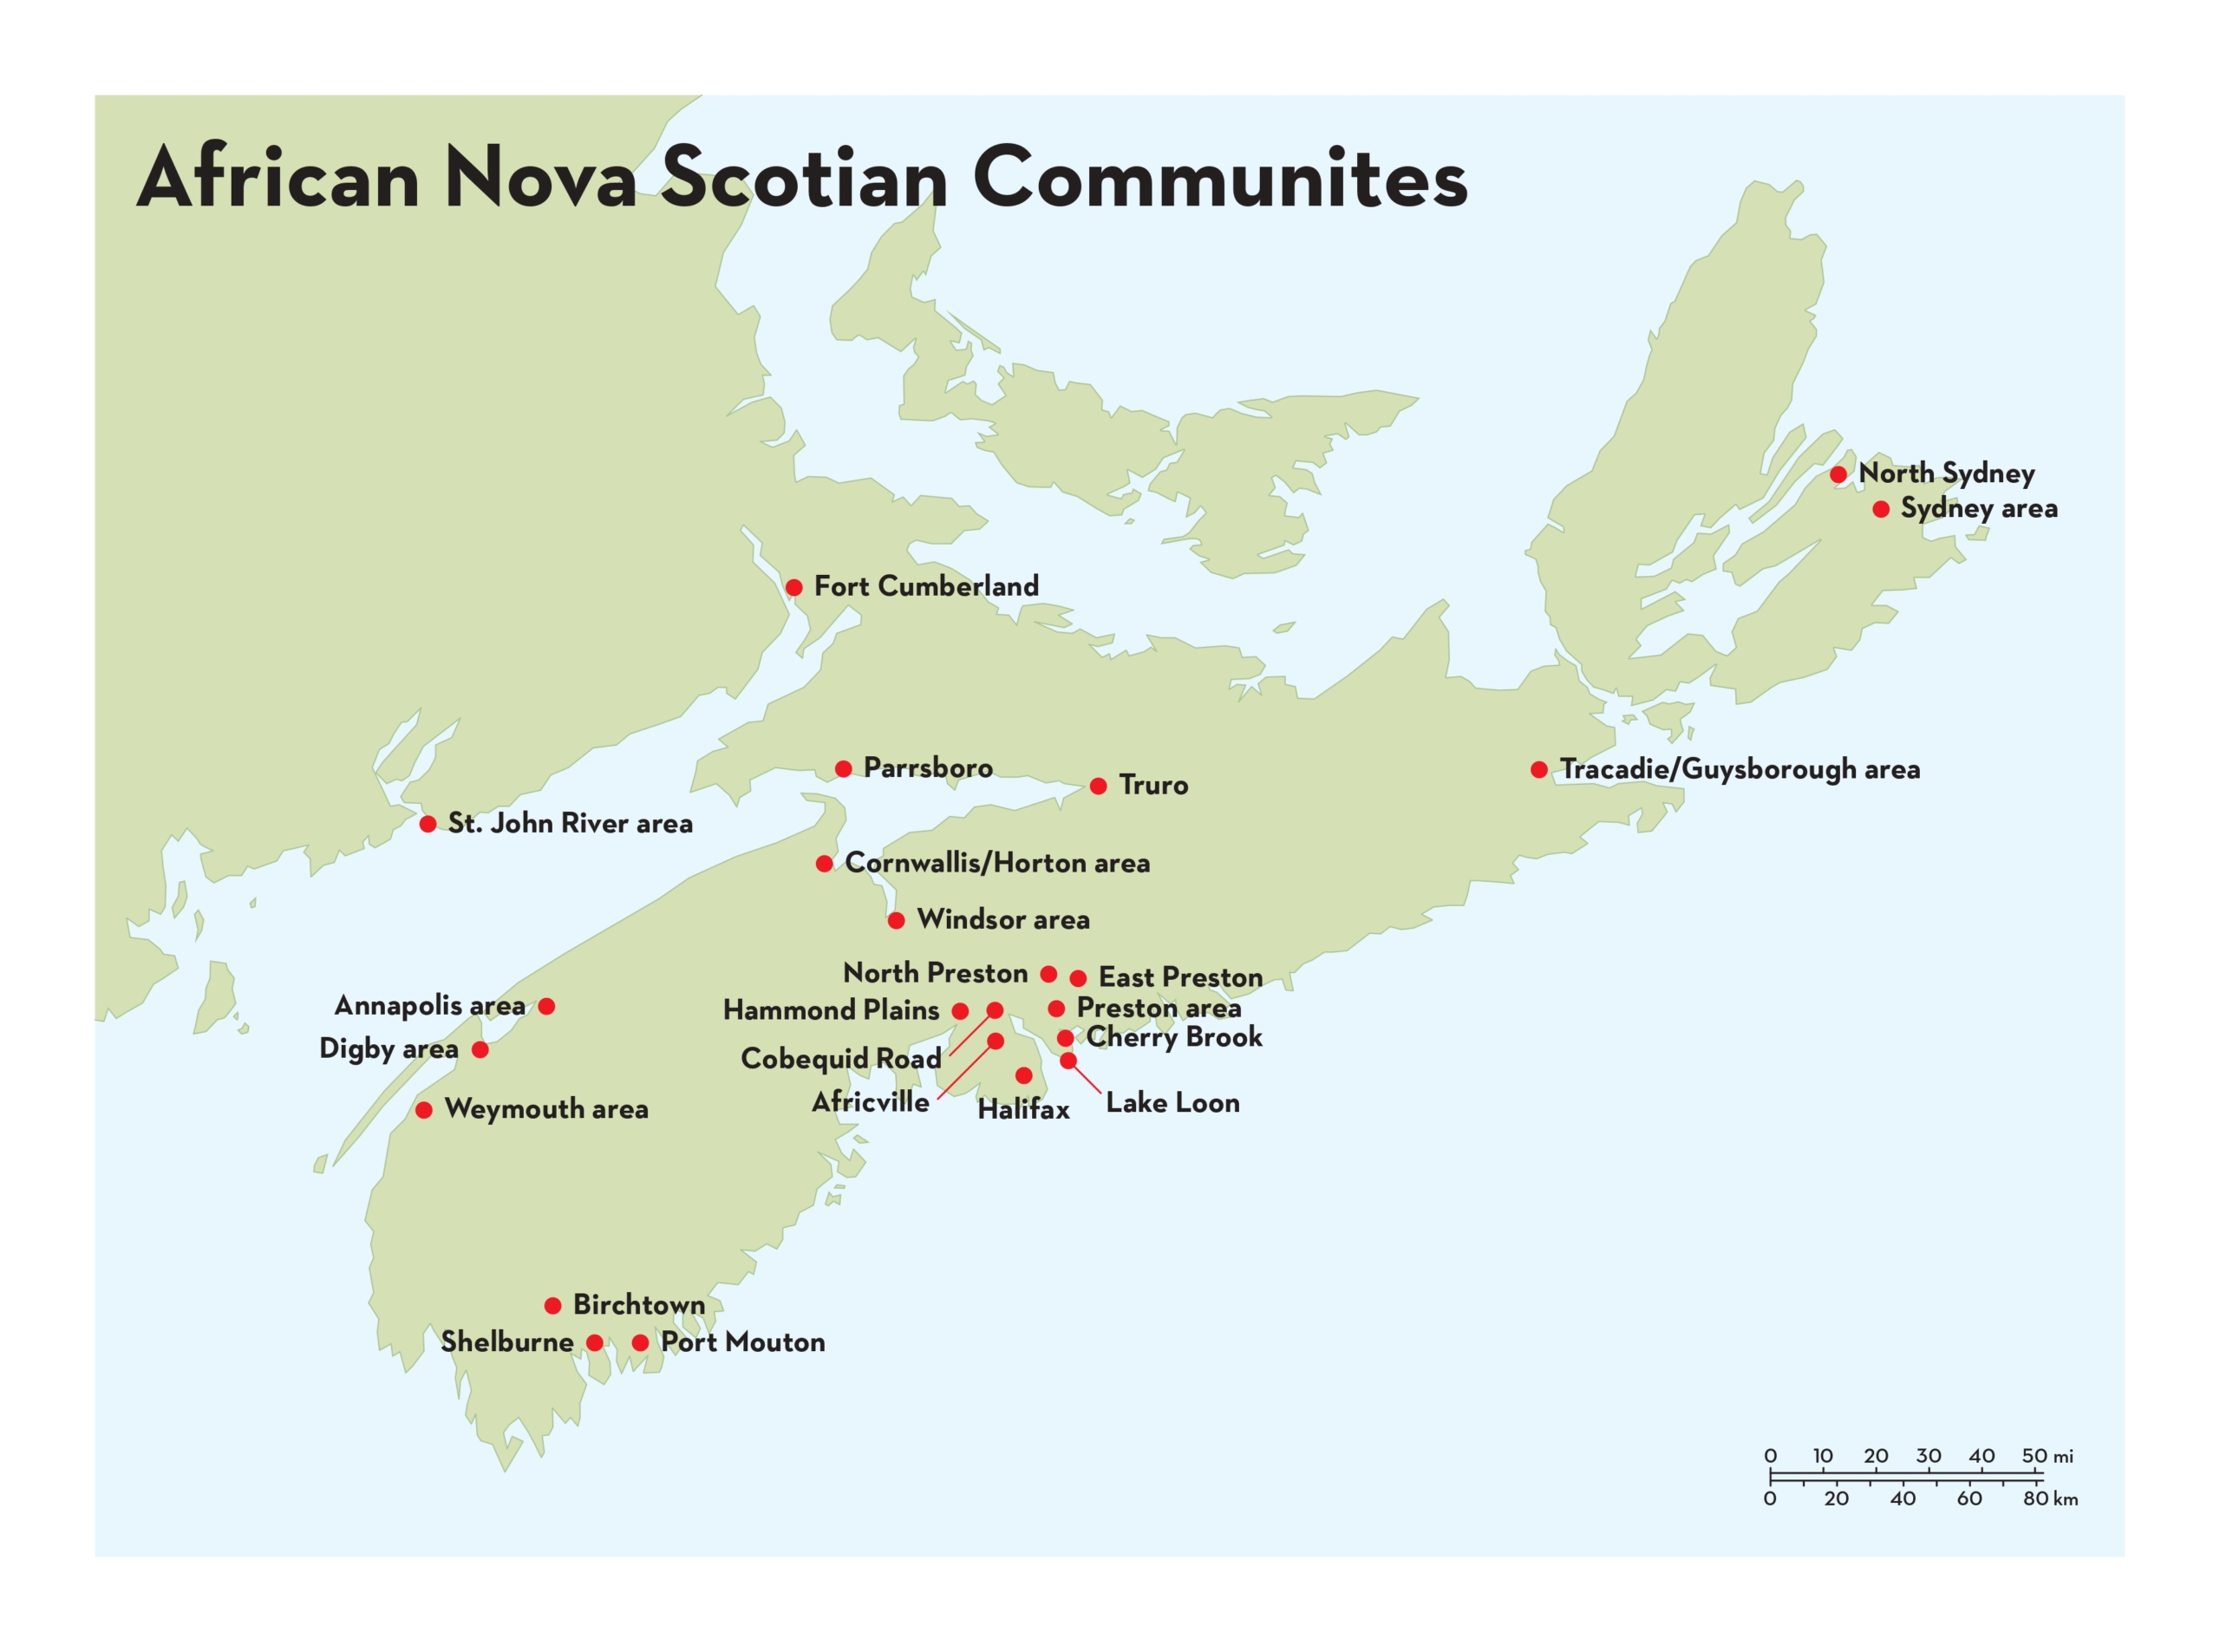 A map of Nova Scotia showing African Nova Scotian communities. Une carte de la Nouvelle-Écosse montrant les communautés afro-néo-écossaises